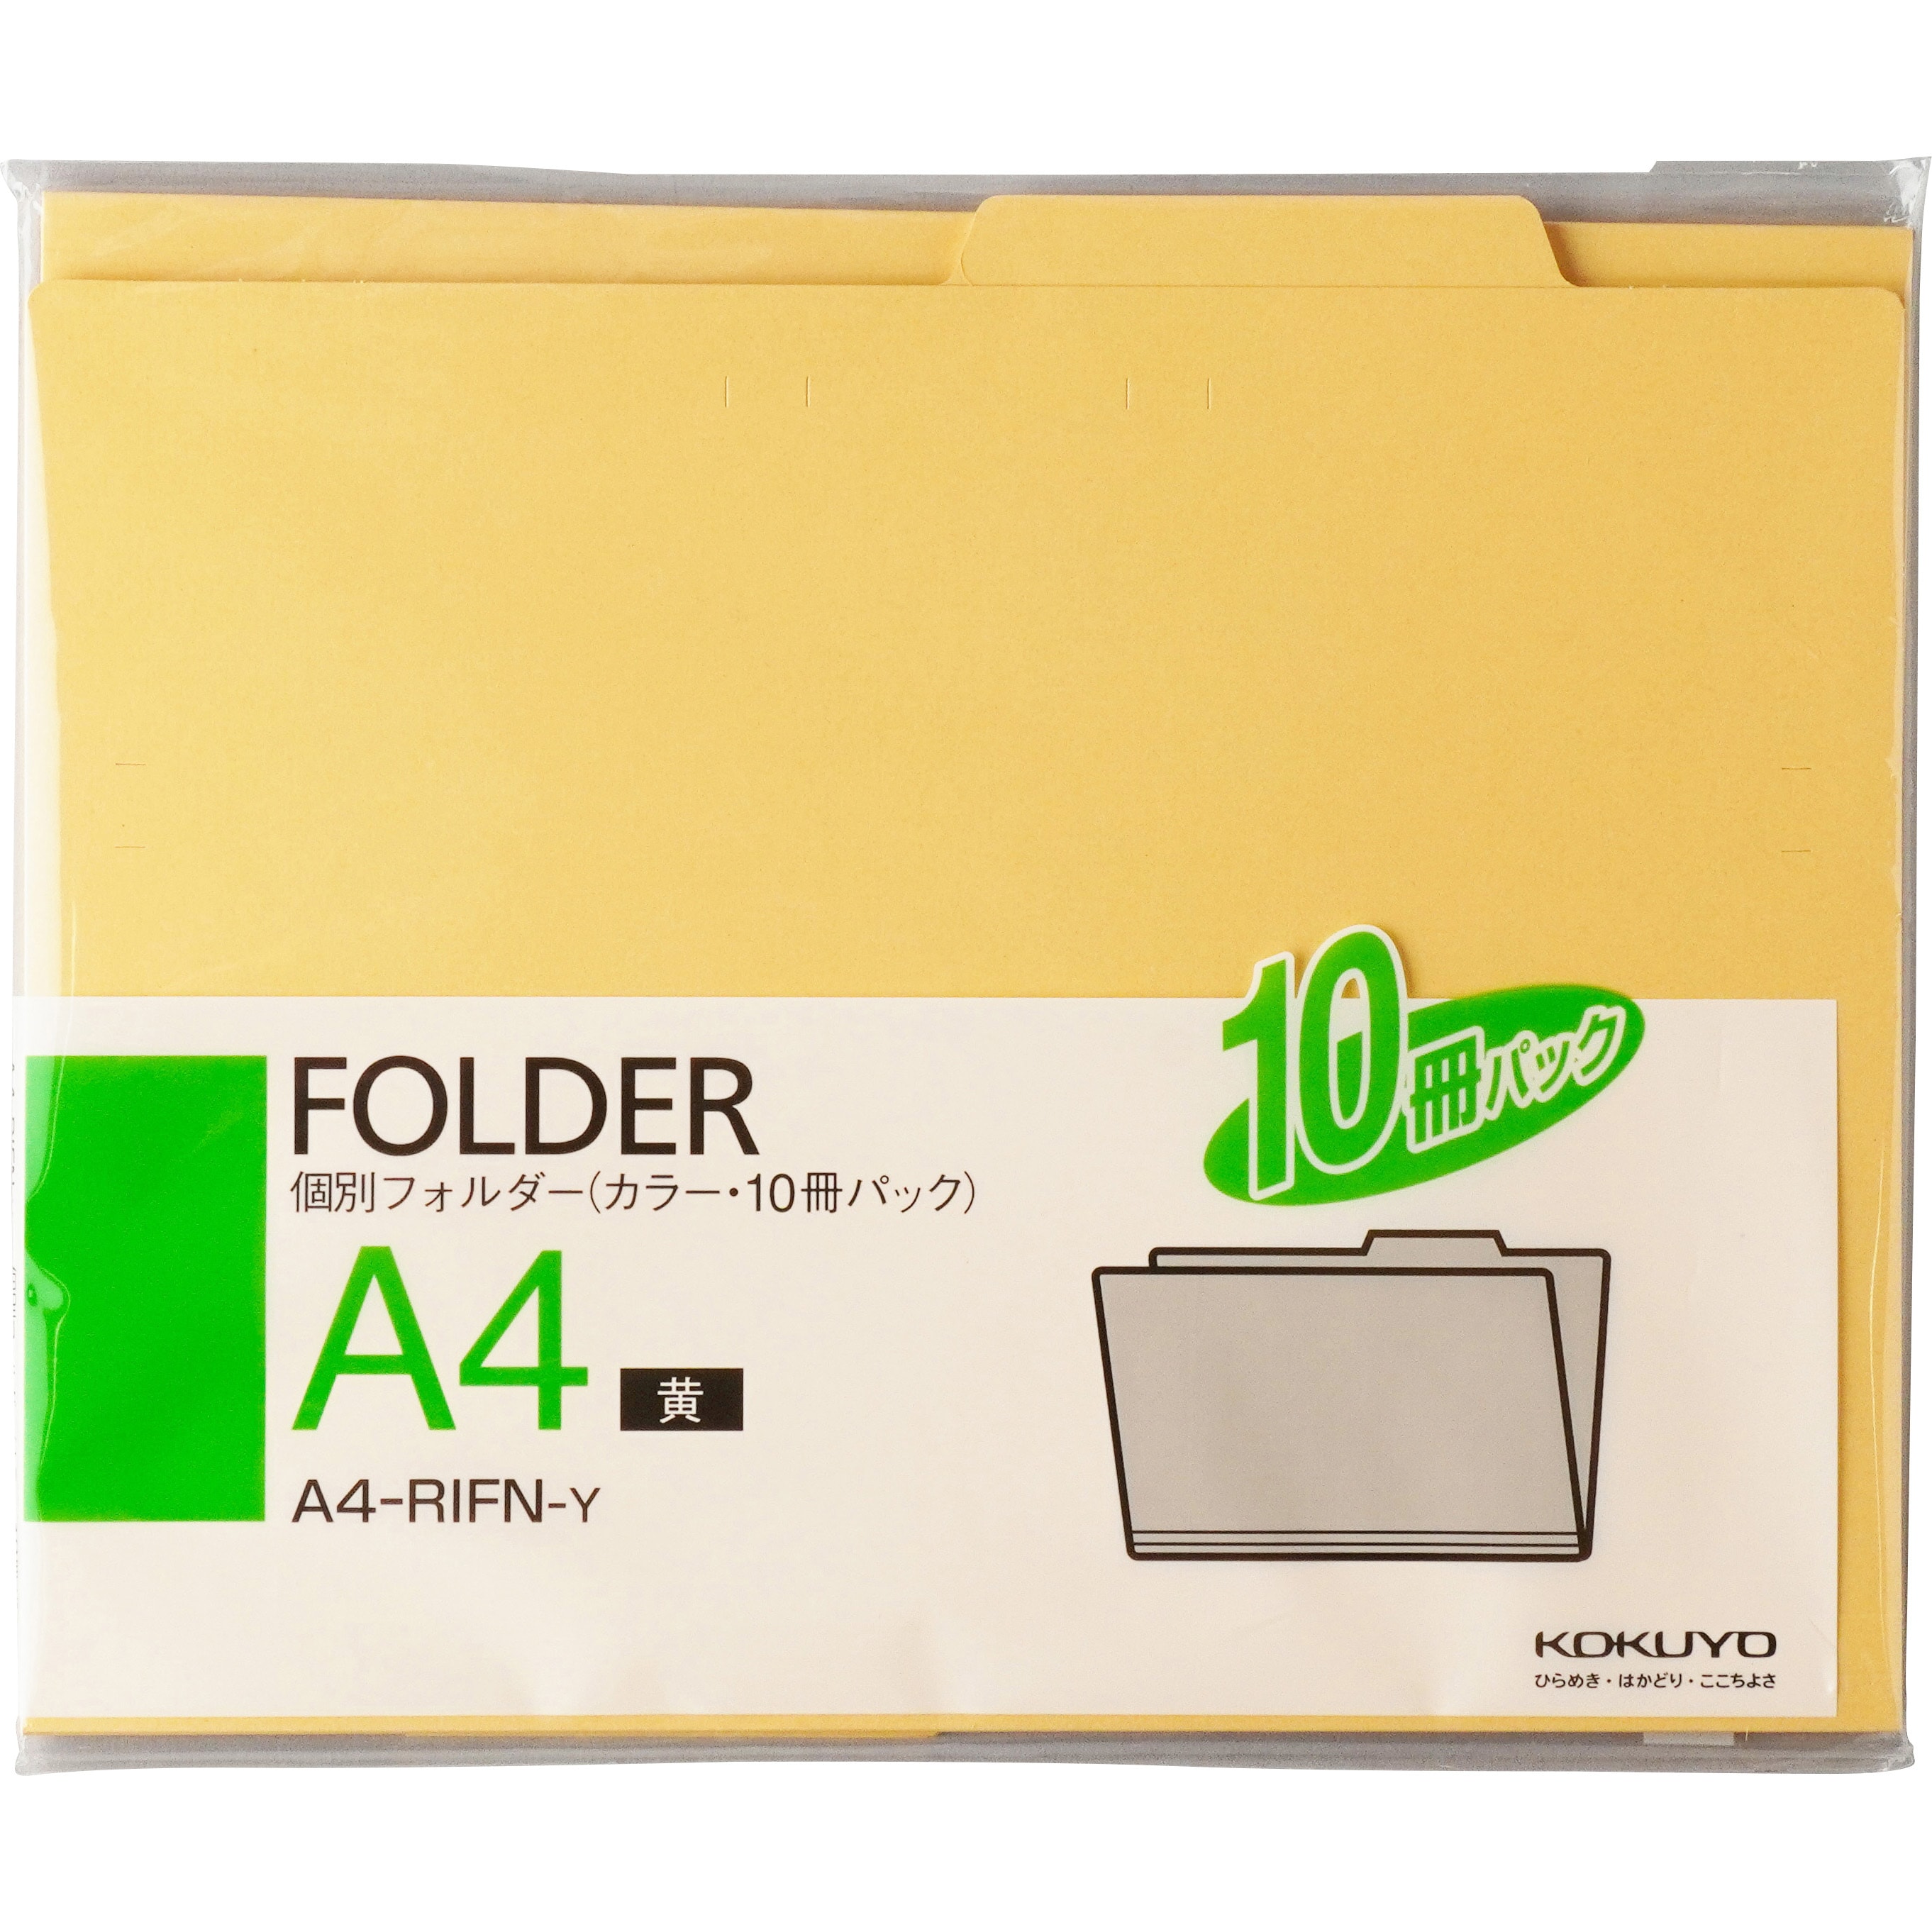 A4-RIFN-Y 個別フォルダー A4 カラー 10冊パック 1パック(10冊) コクヨ